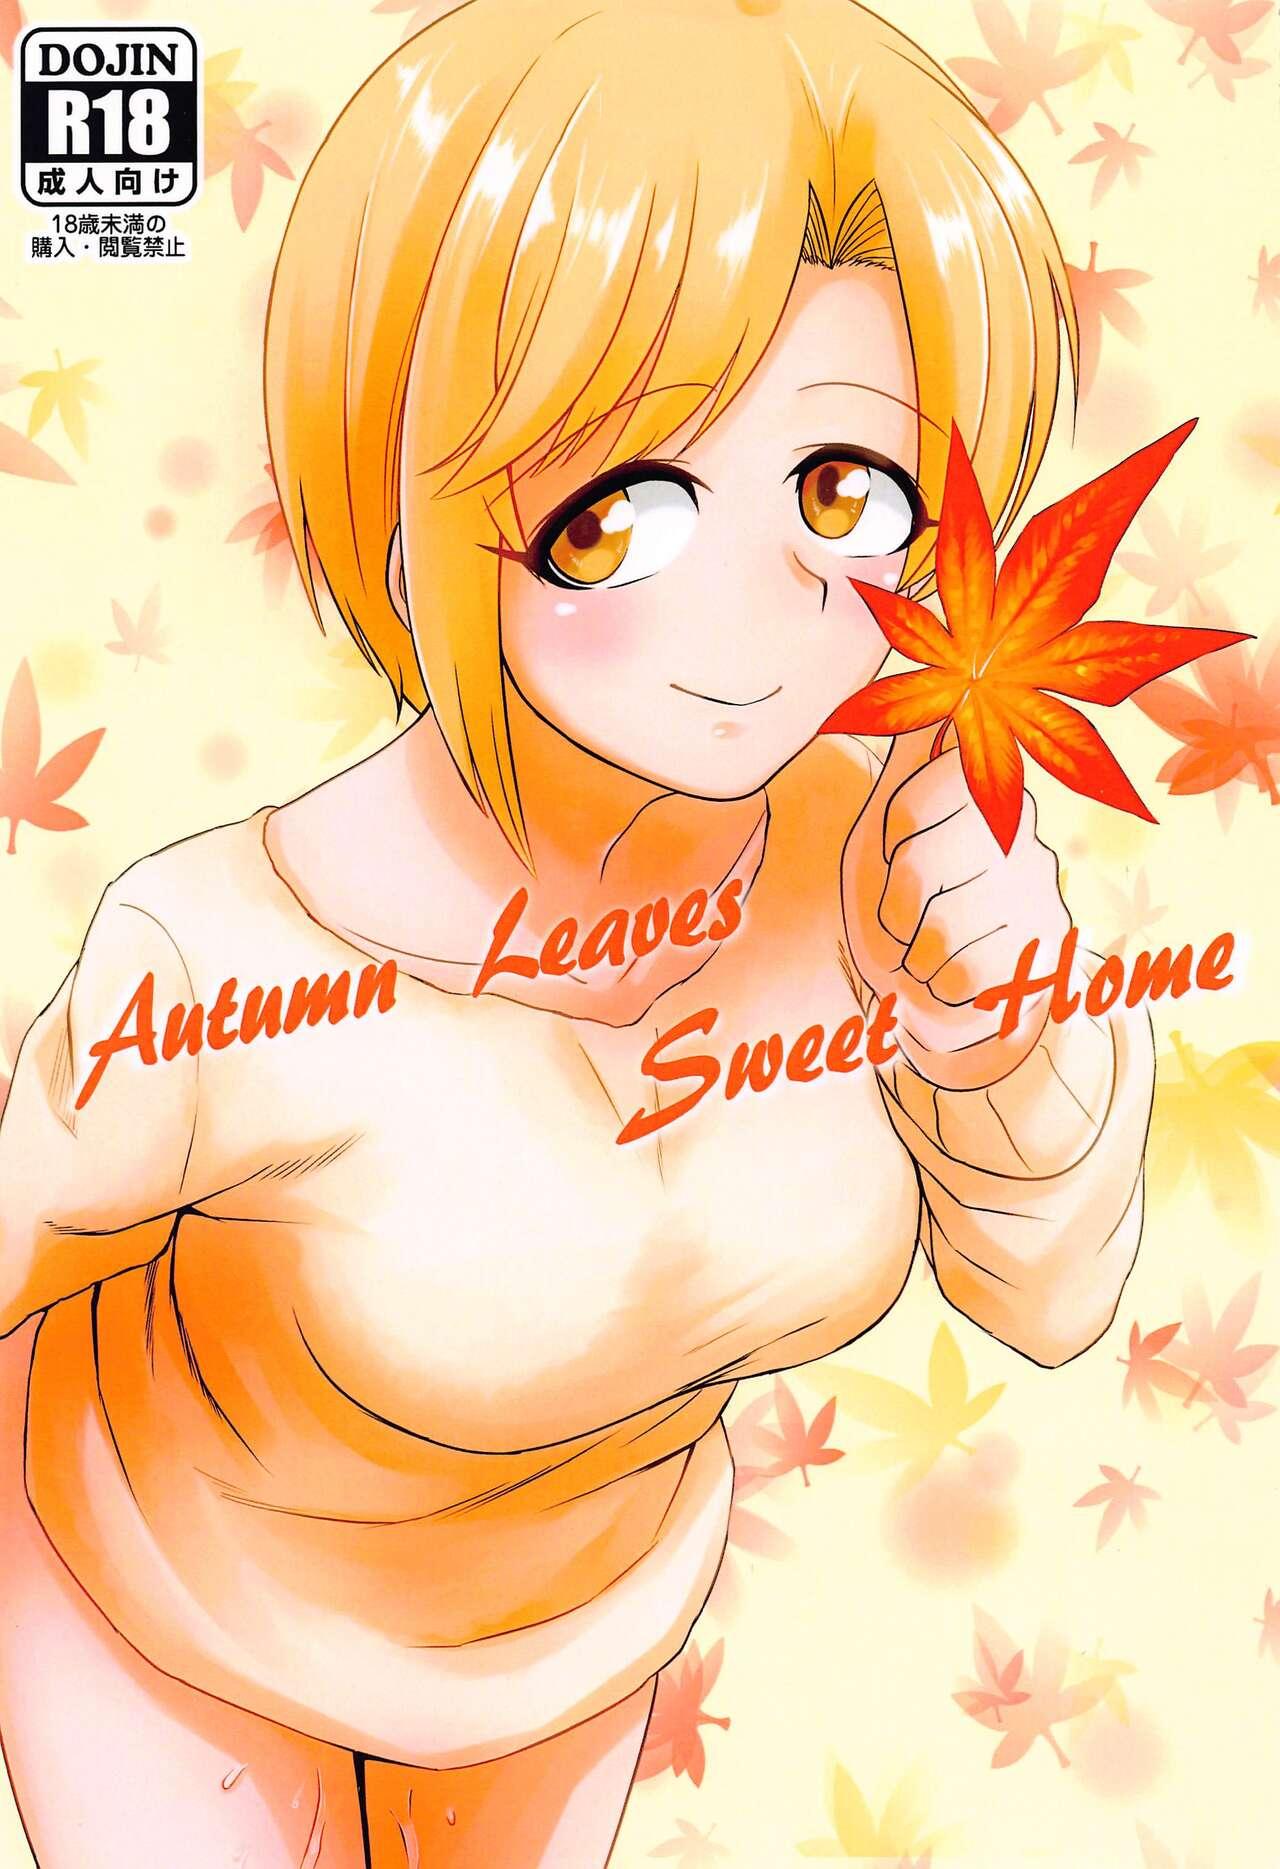 Autumn Leaves Sweet Home (歌姫庭園29) [メロディ屋 (アマデウスキー)] (アイドルマスター シンデレラガールズ) 0